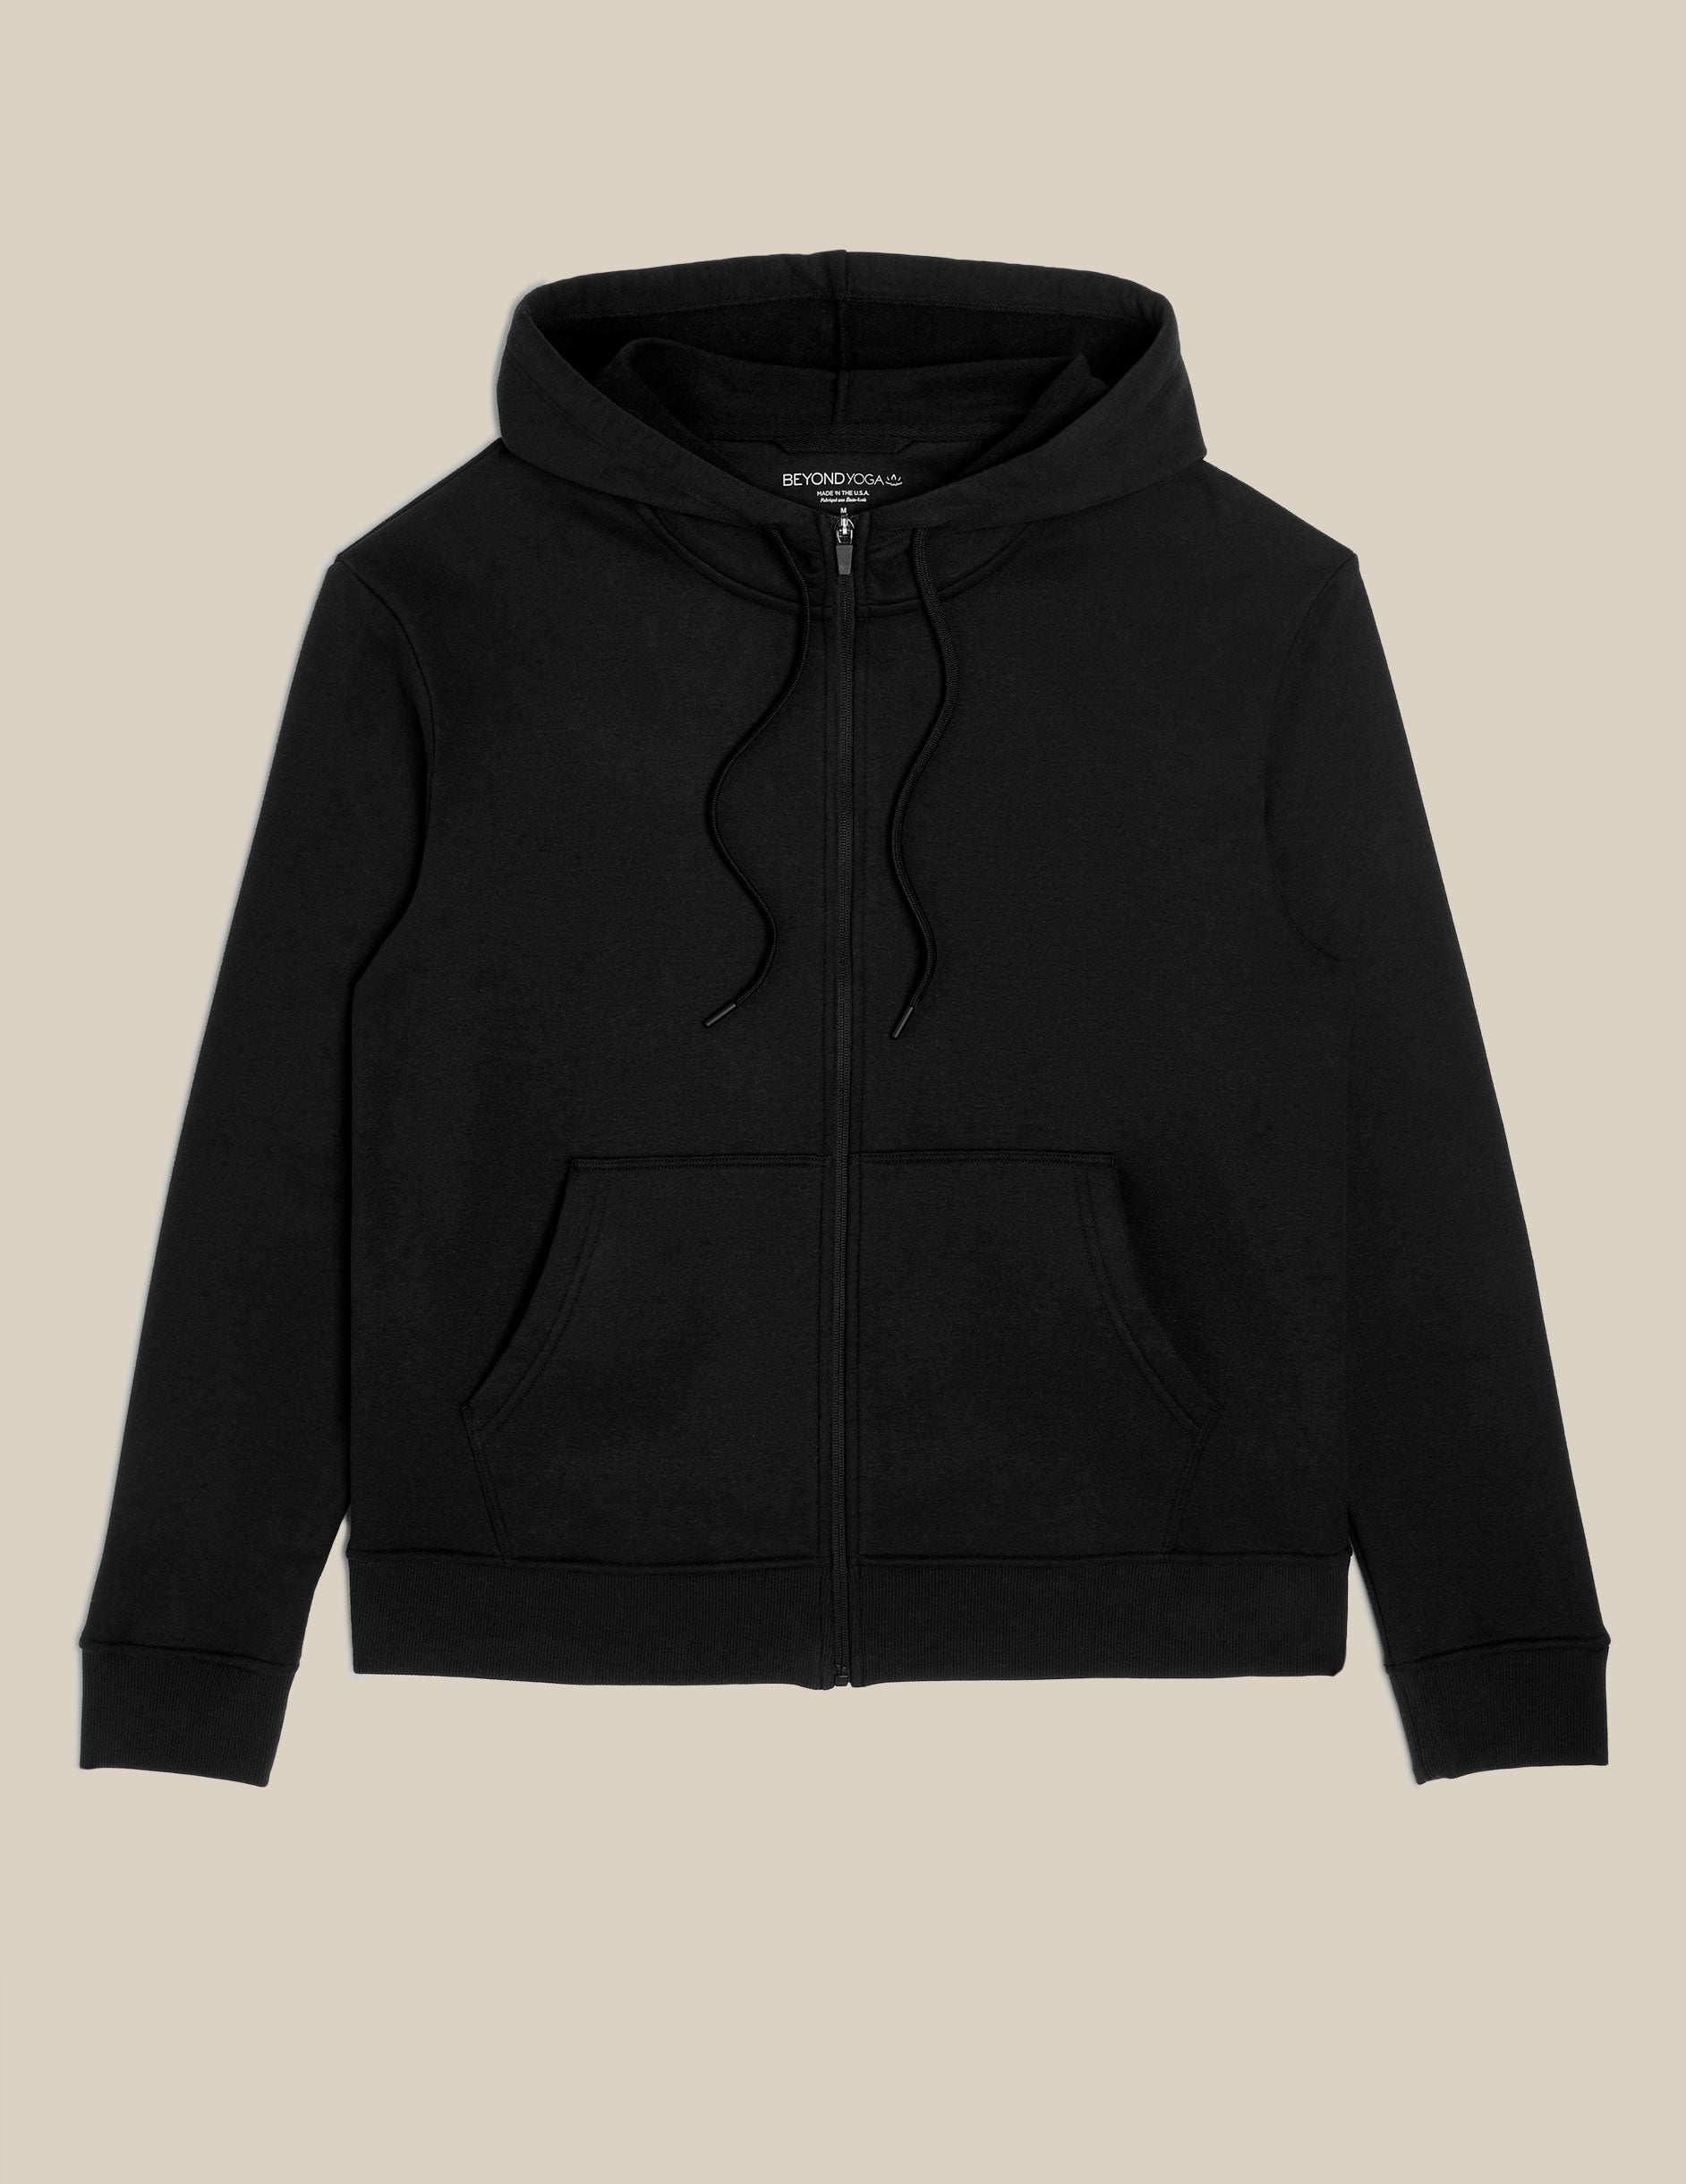 black men's zip-up hoodie.